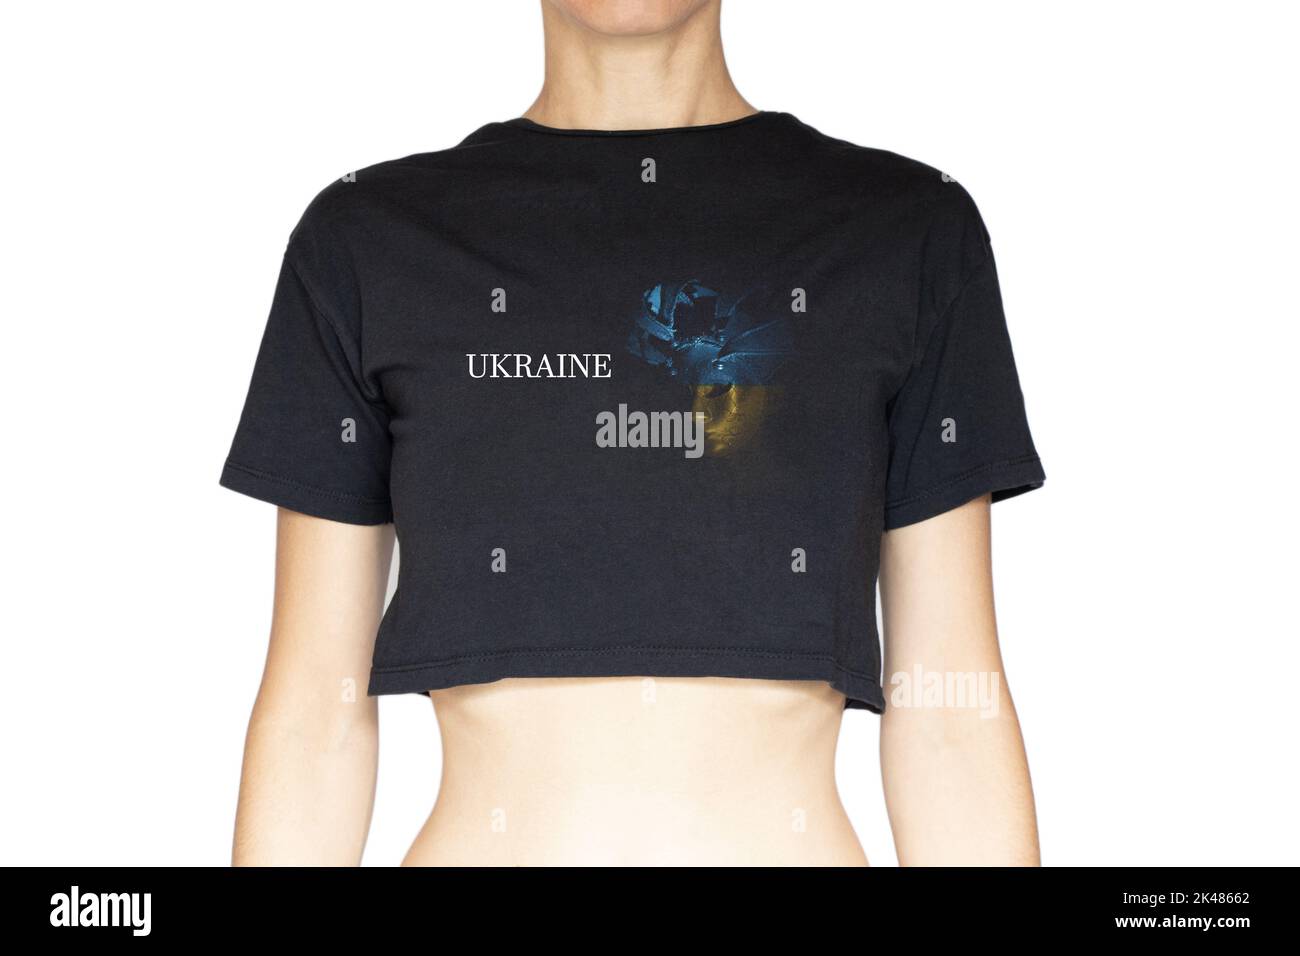 Una ragazza in una T-shirt nera e una foto sul disegno di una maschera veneziana nei colori della bandiera dell'Ucraina e il testo Ucraina su un backgroun bianco Foto Stock